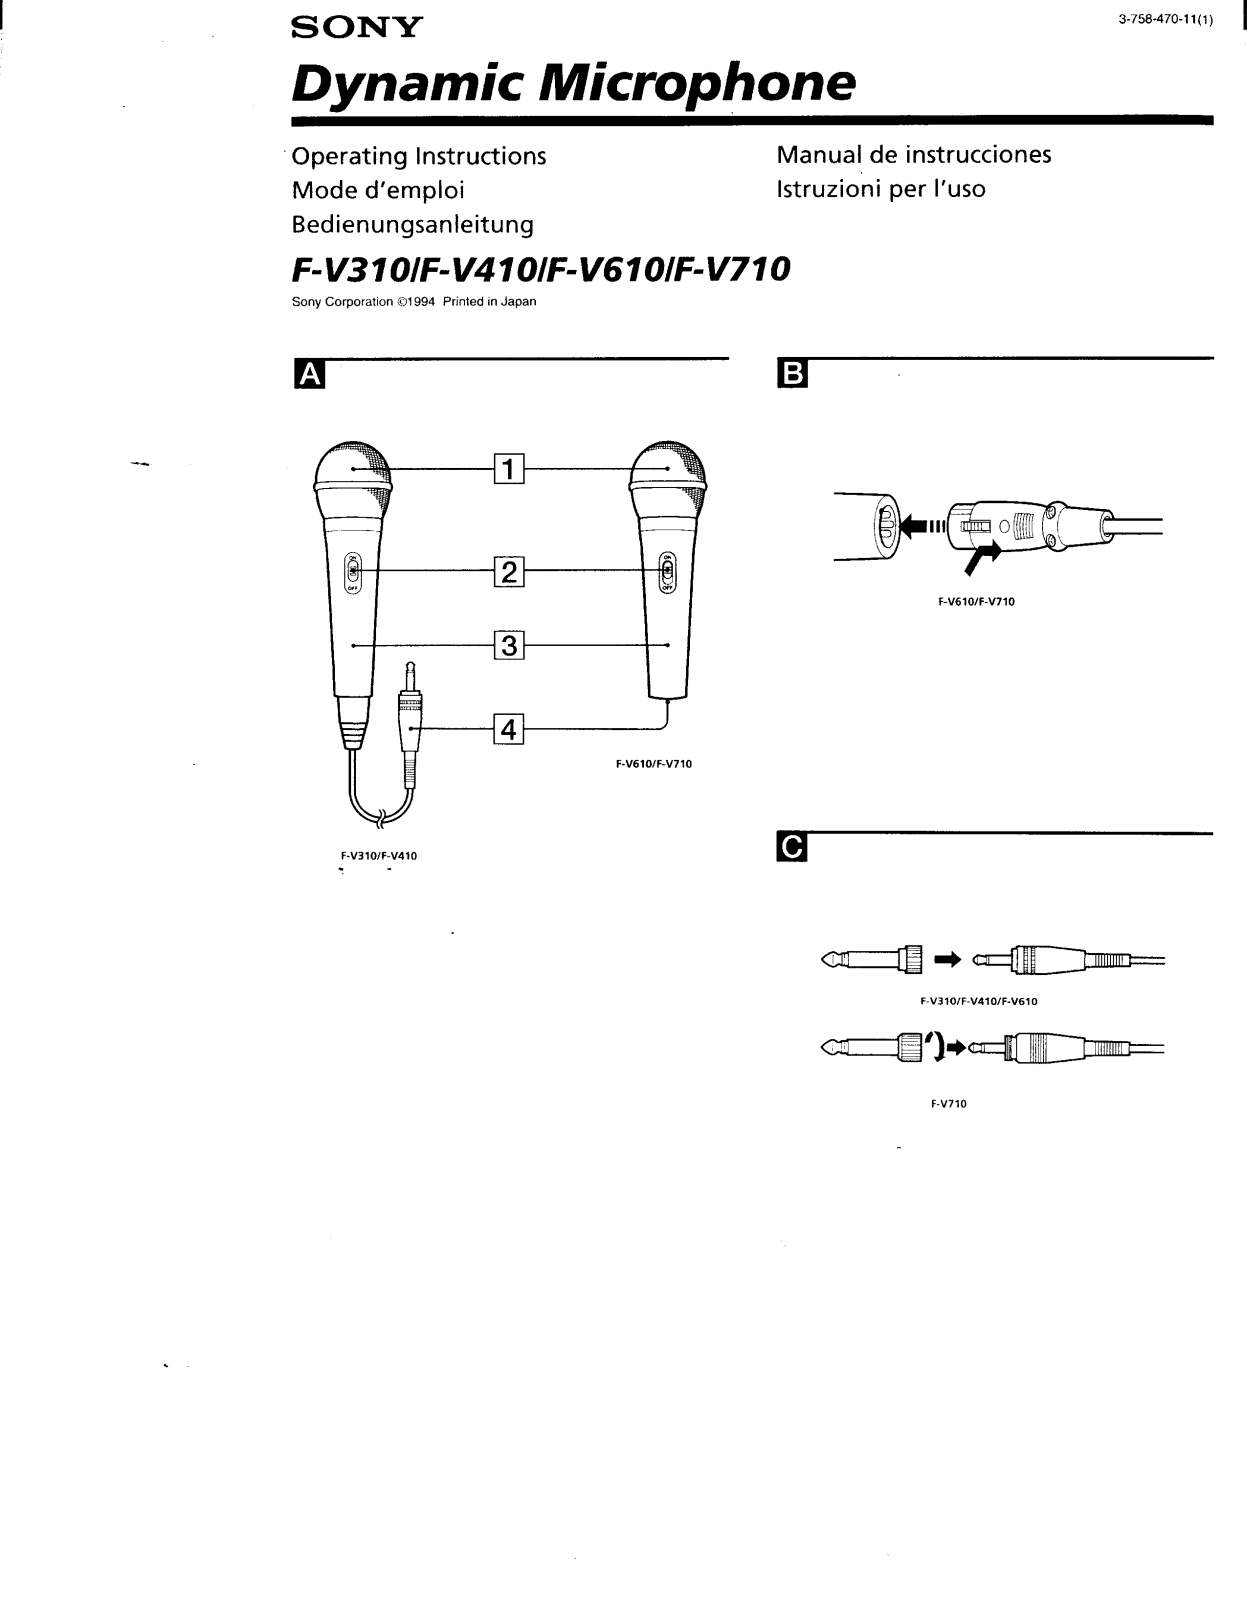 Sony fv, 310, fv410, fv610, fv710 Operating Manual